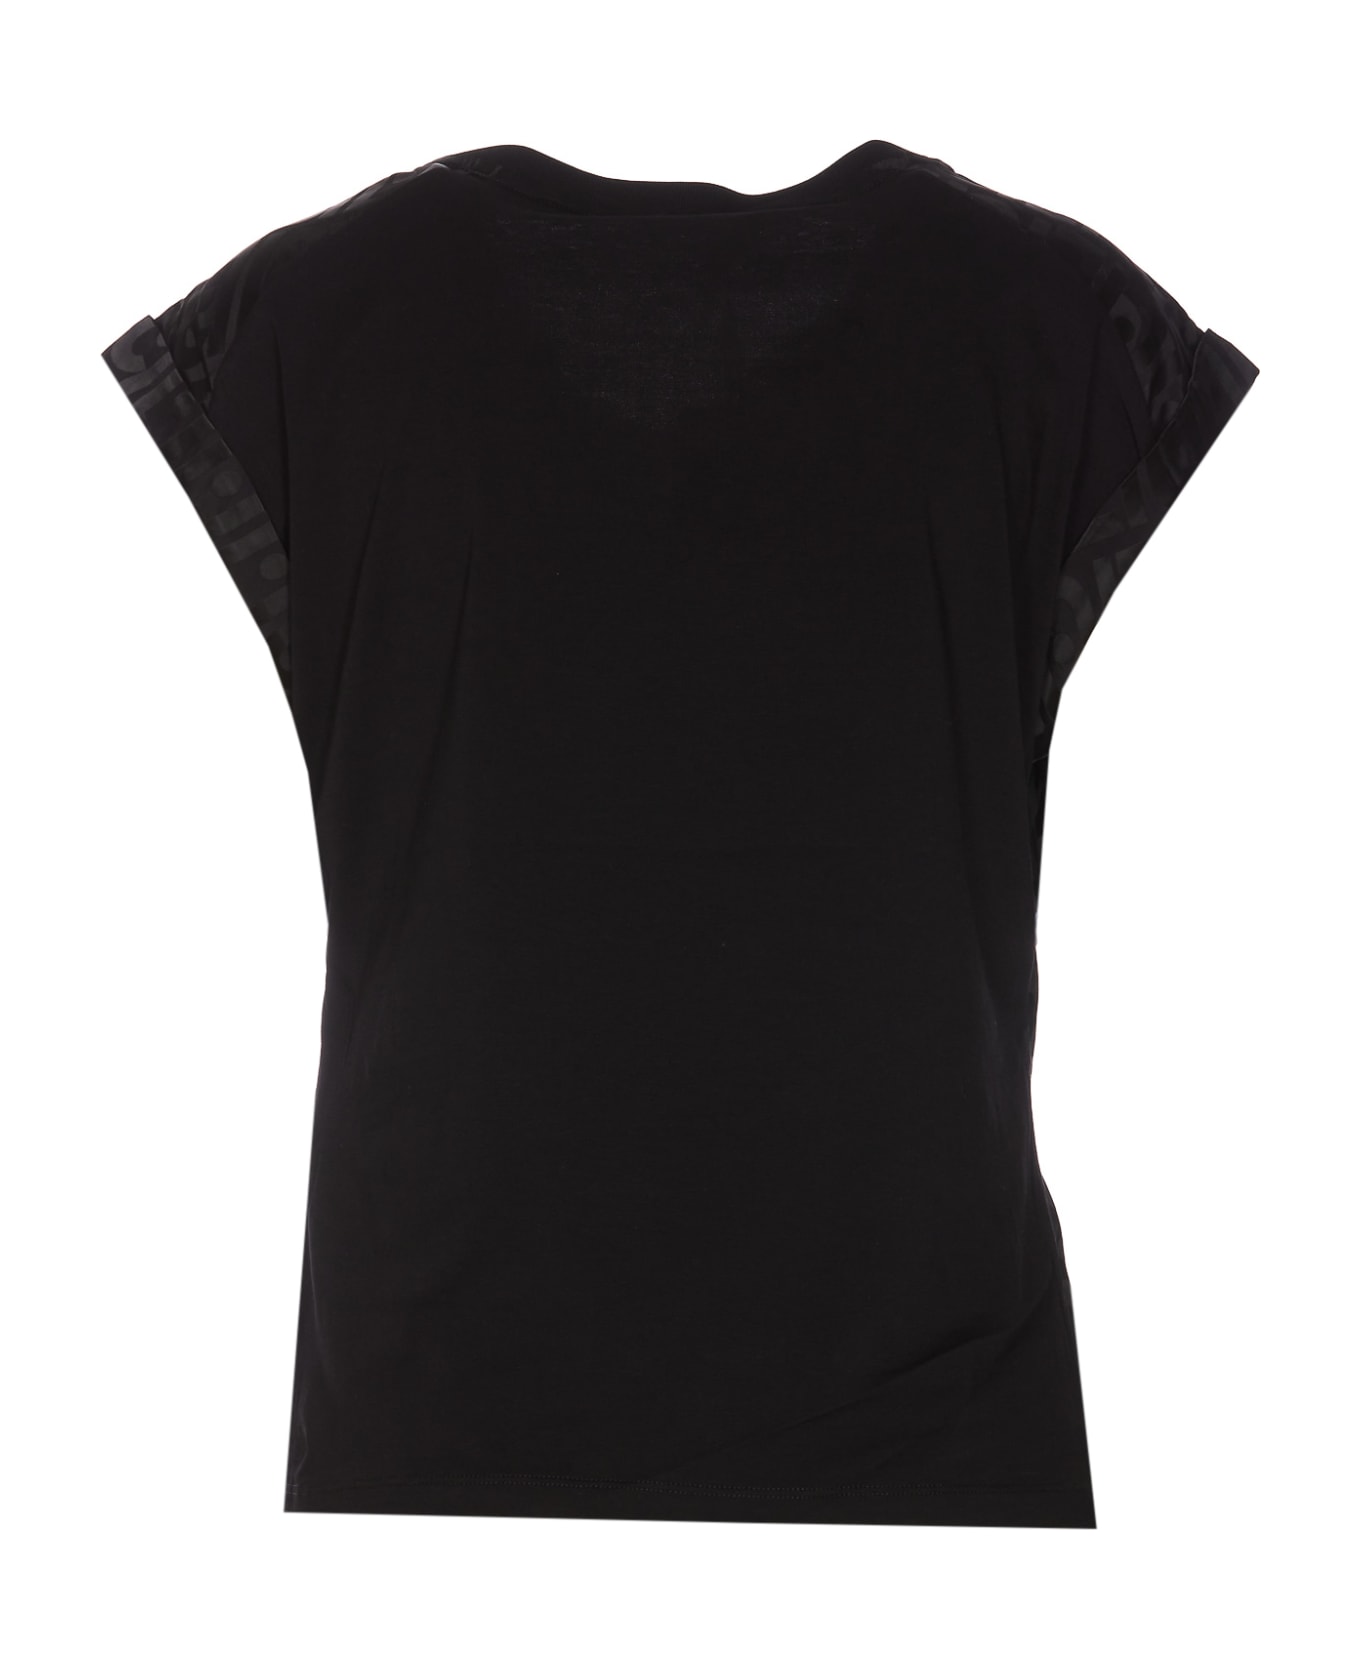 Liu-Jo T-shirt - Black